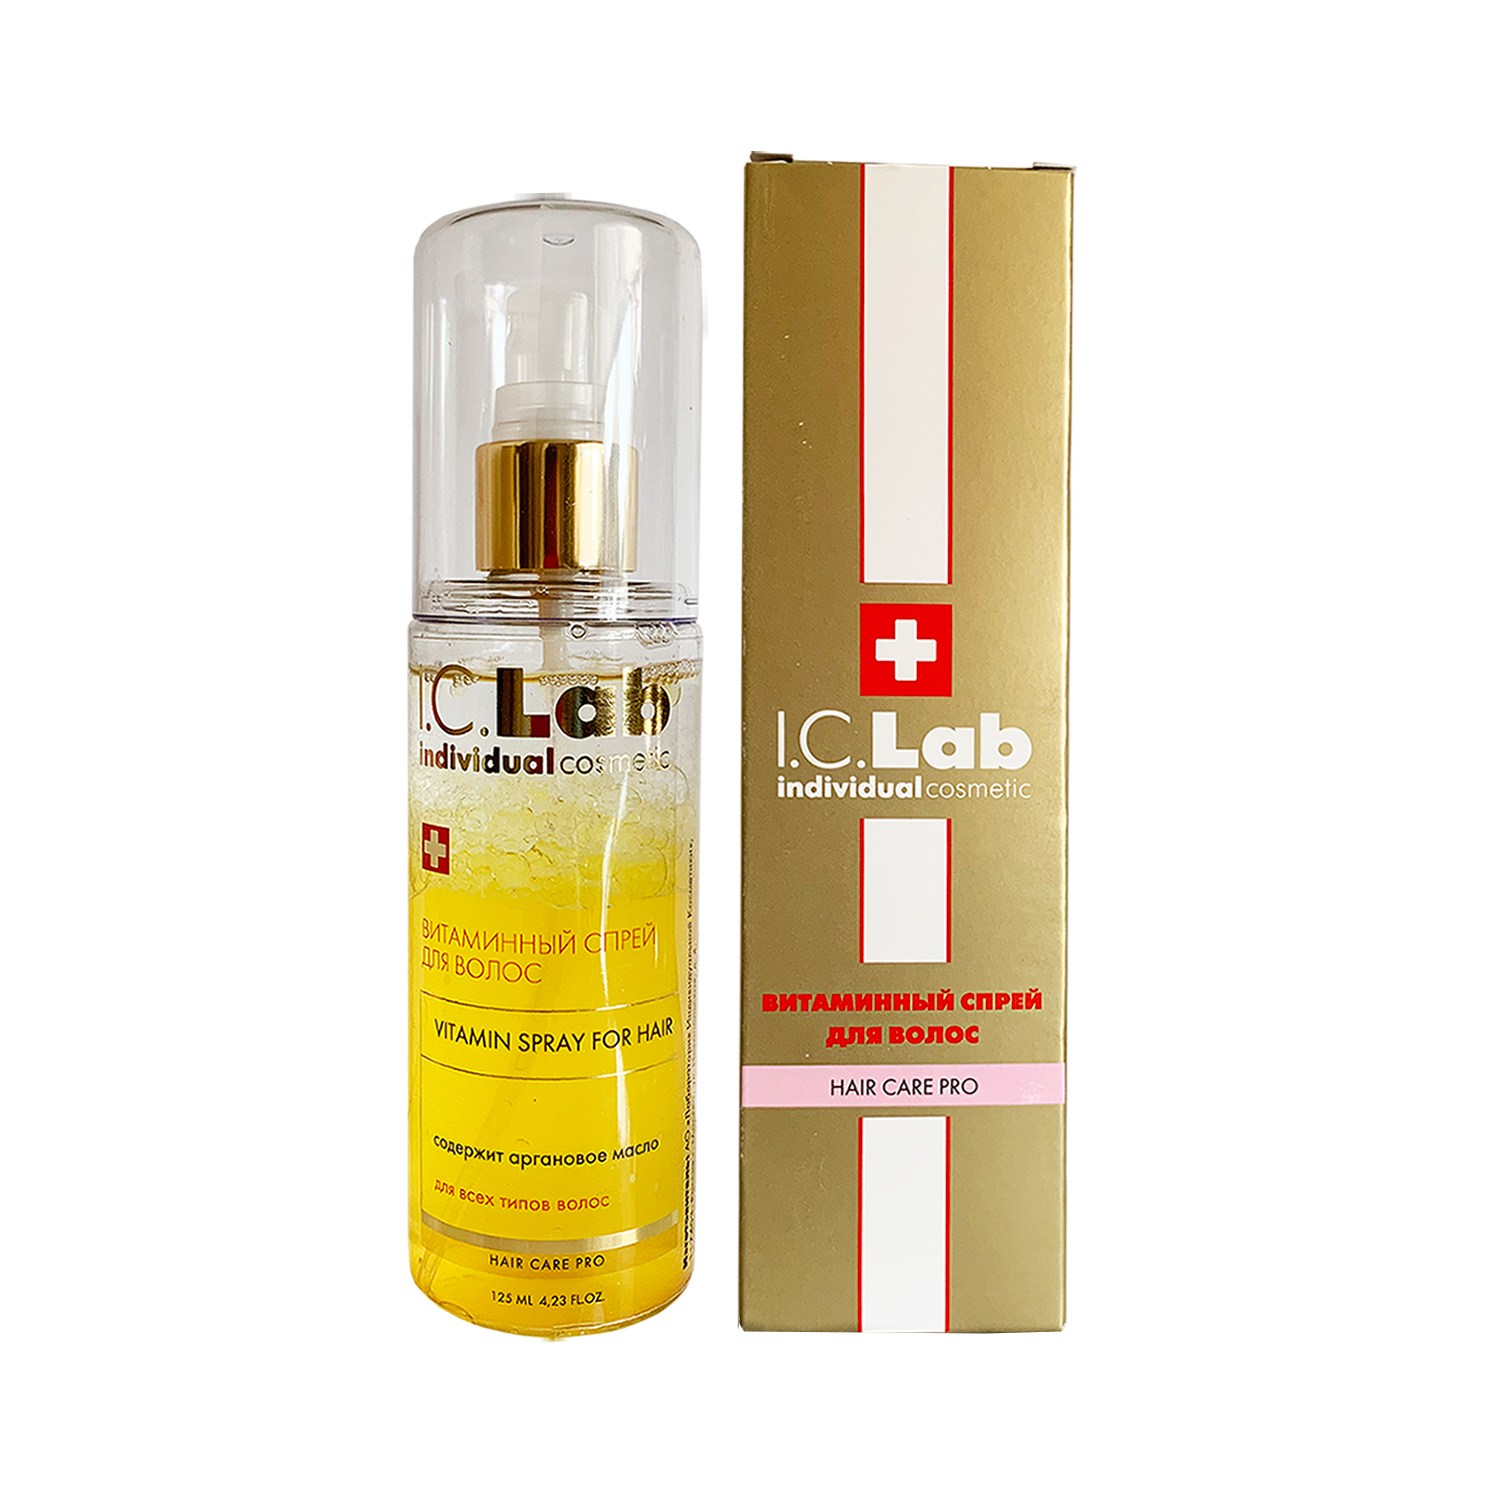 Витаминный спрей для волос I.C.Lab Individual cosmetic teana энергетический витаминный тоник спрей 125 мл